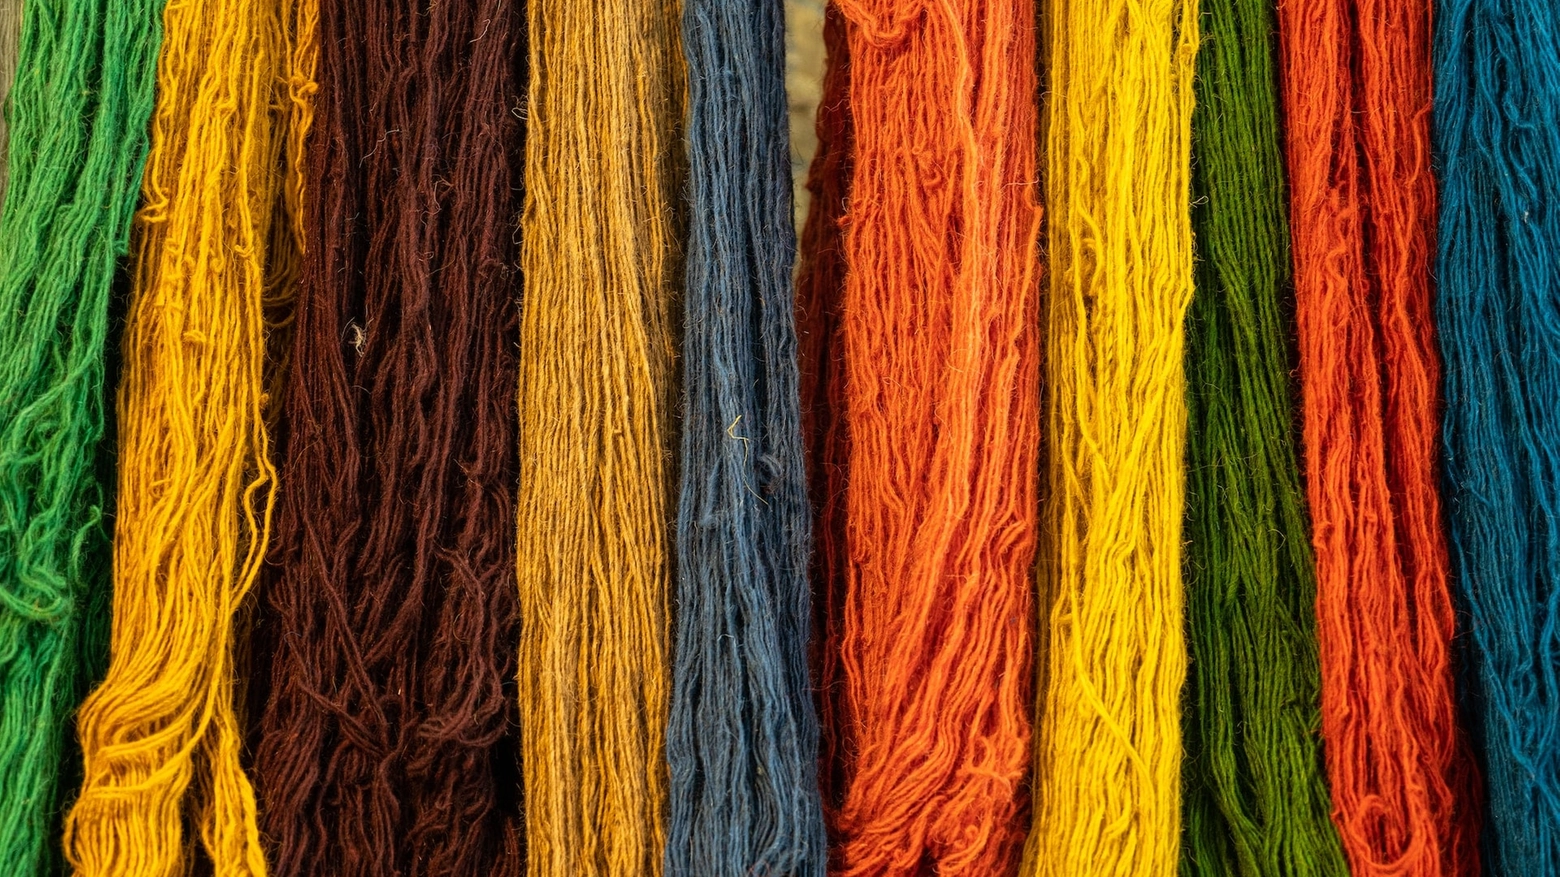 L'industria tessile è seconda a livello mondiale per tasso di inquinamento ambientale